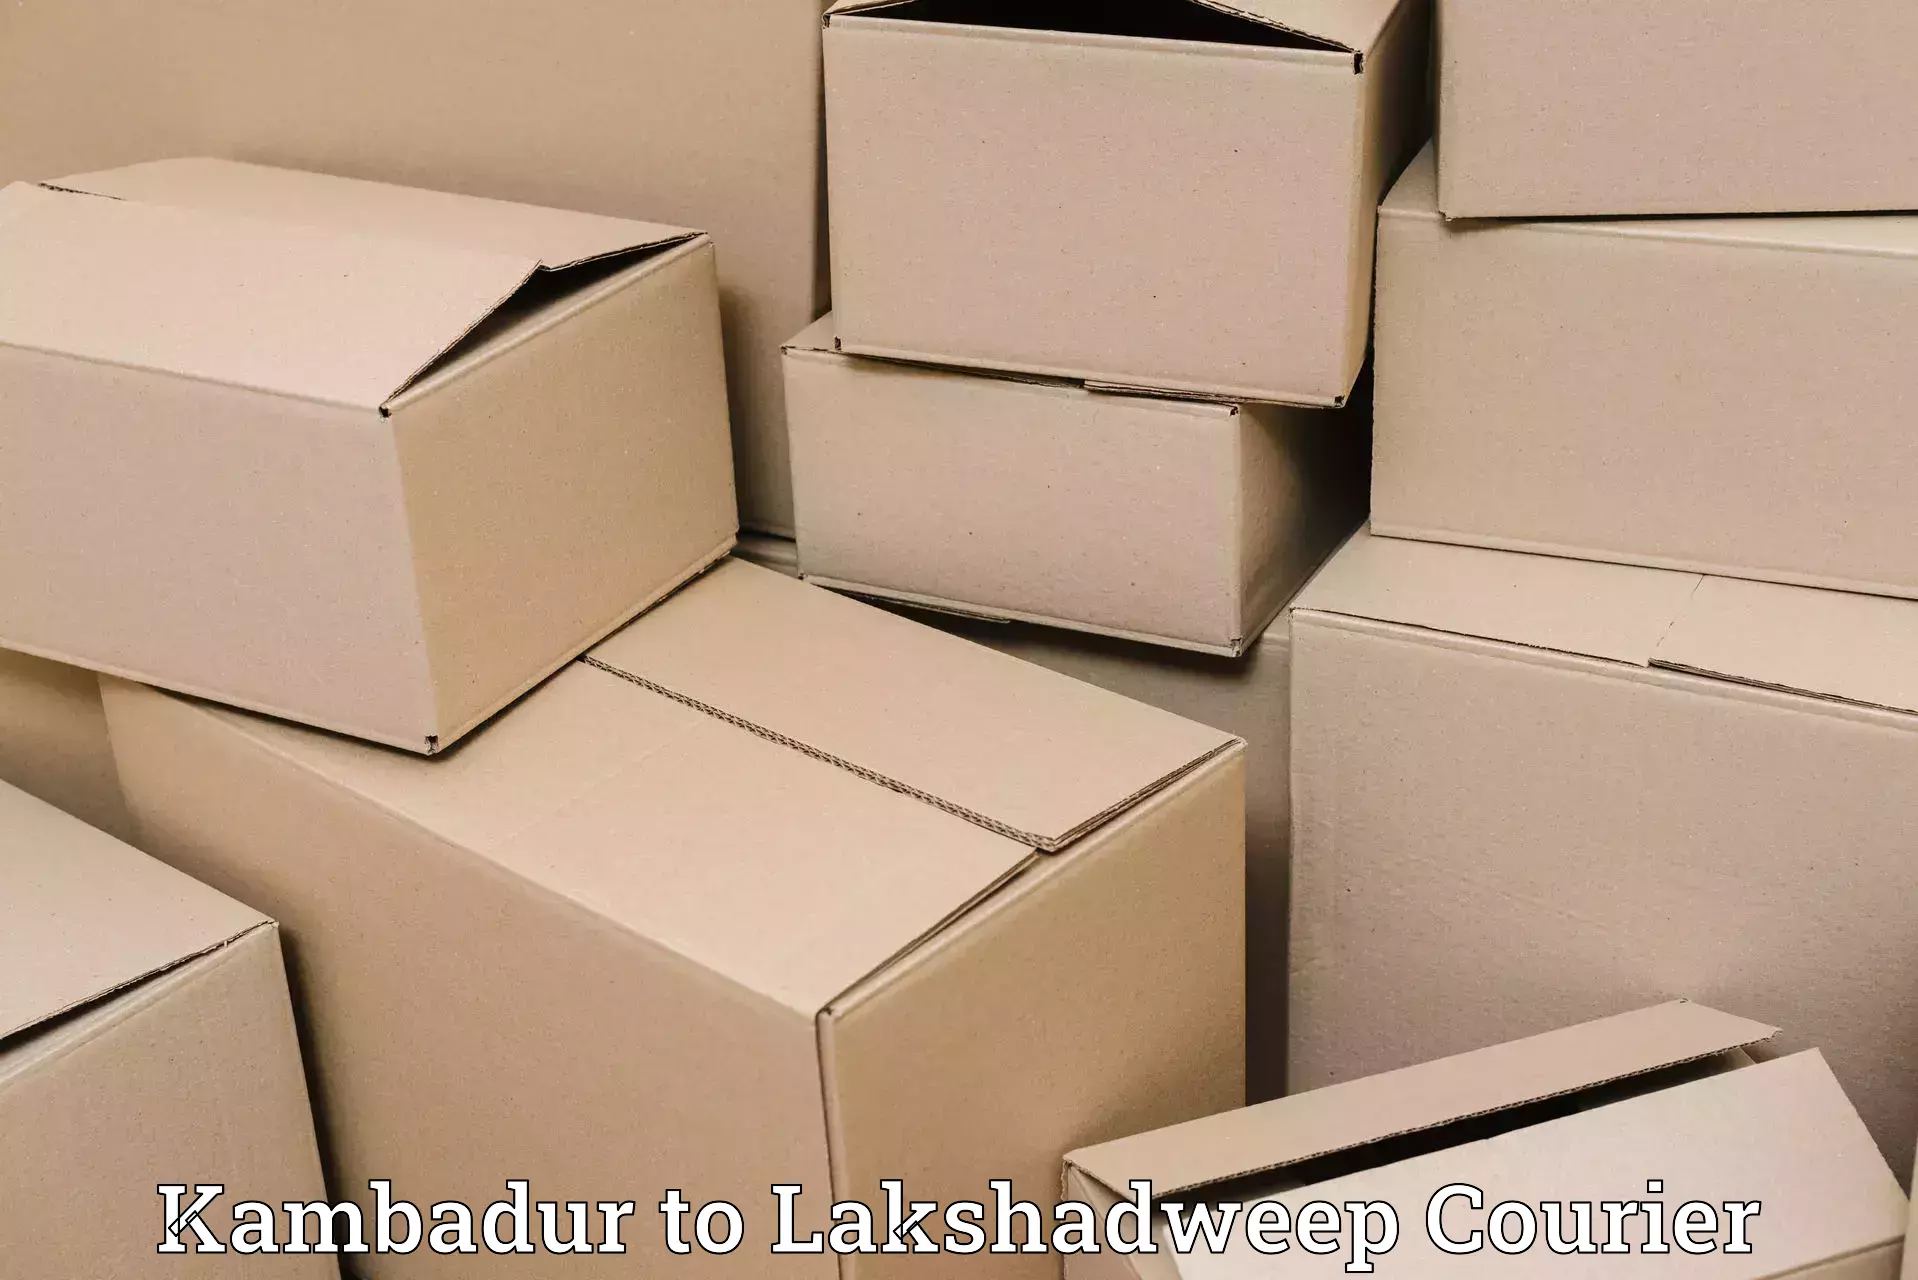 Customized shipping options Kambadur to Lakshadweep